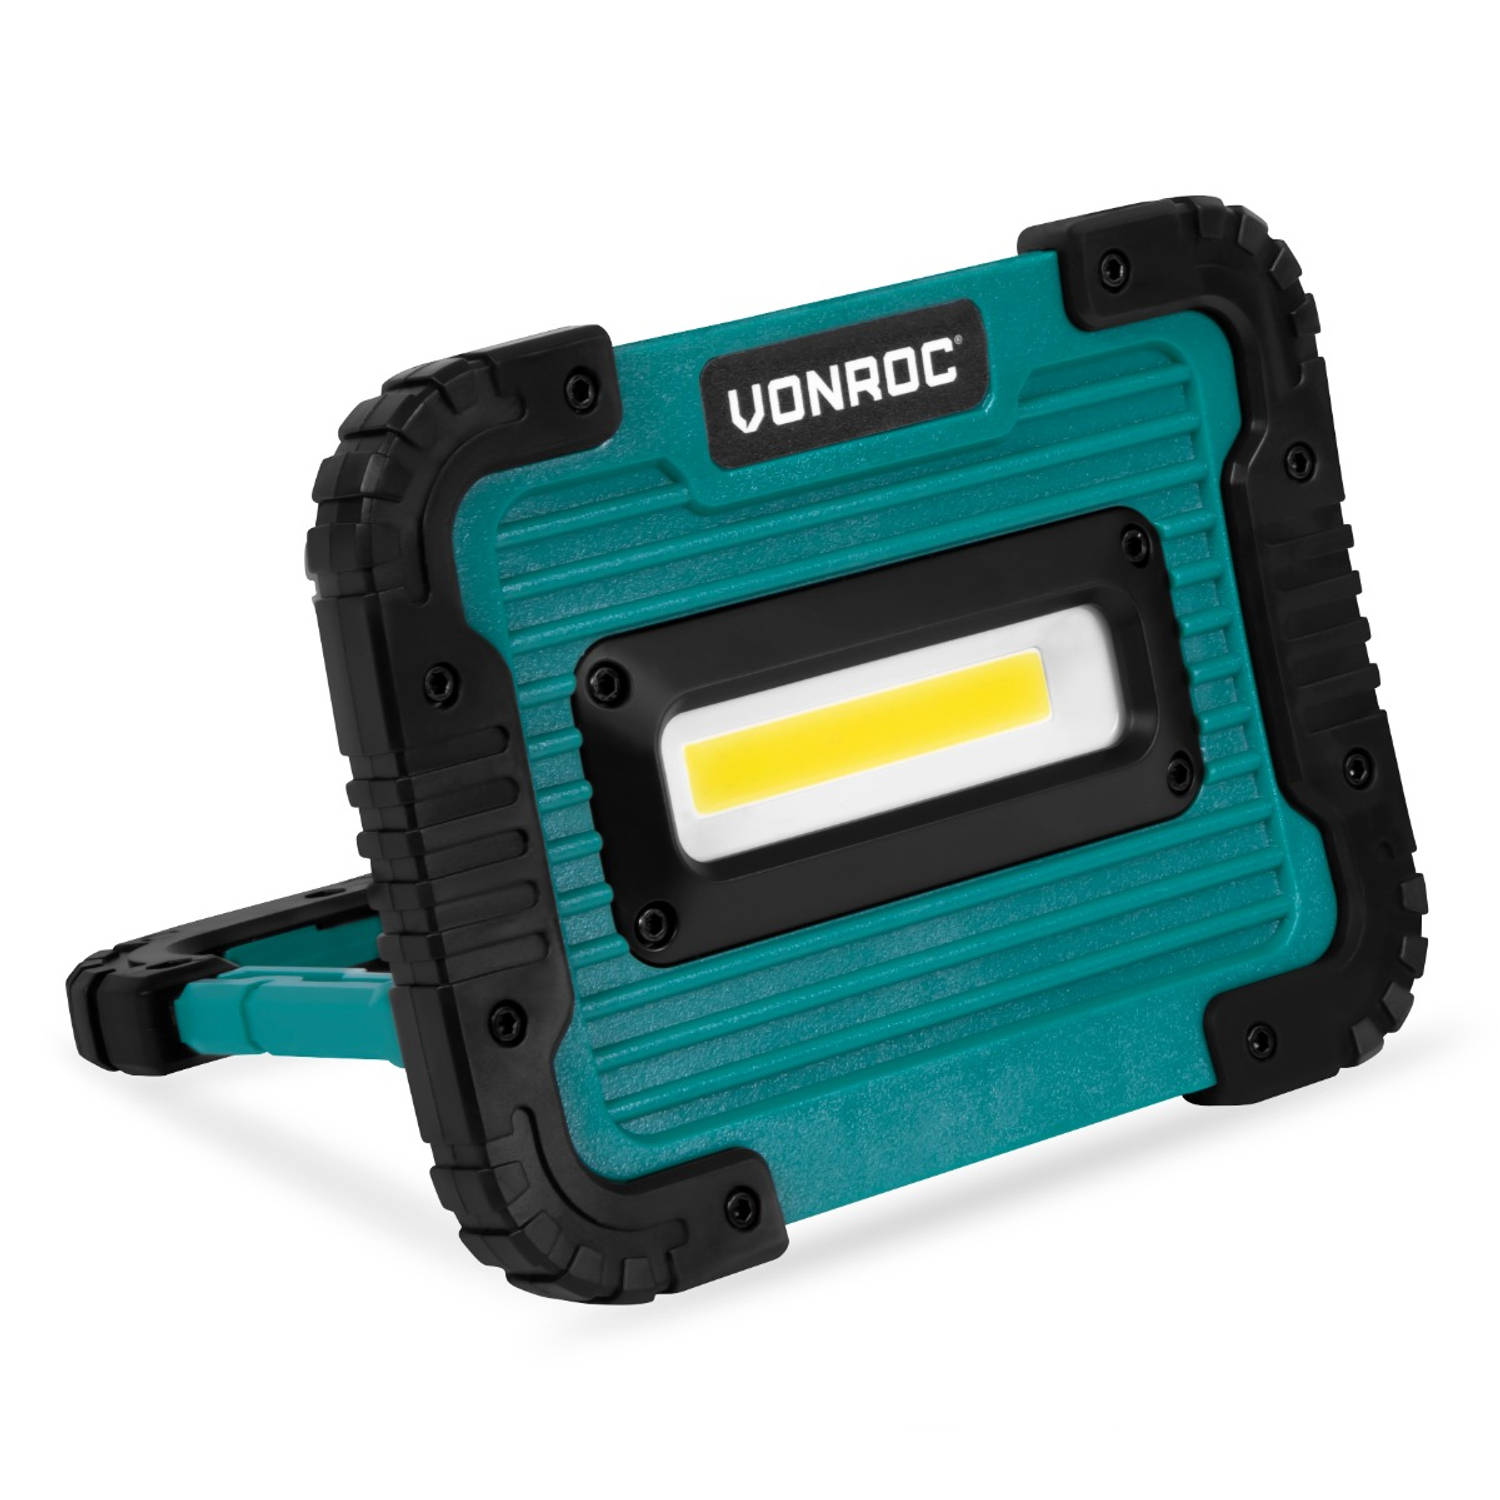 VONROC Accu werklamp-bouwlamp 4V 10W 1000 Lumen Dimbaar in 2 standen Incl. USB oplaadkabel